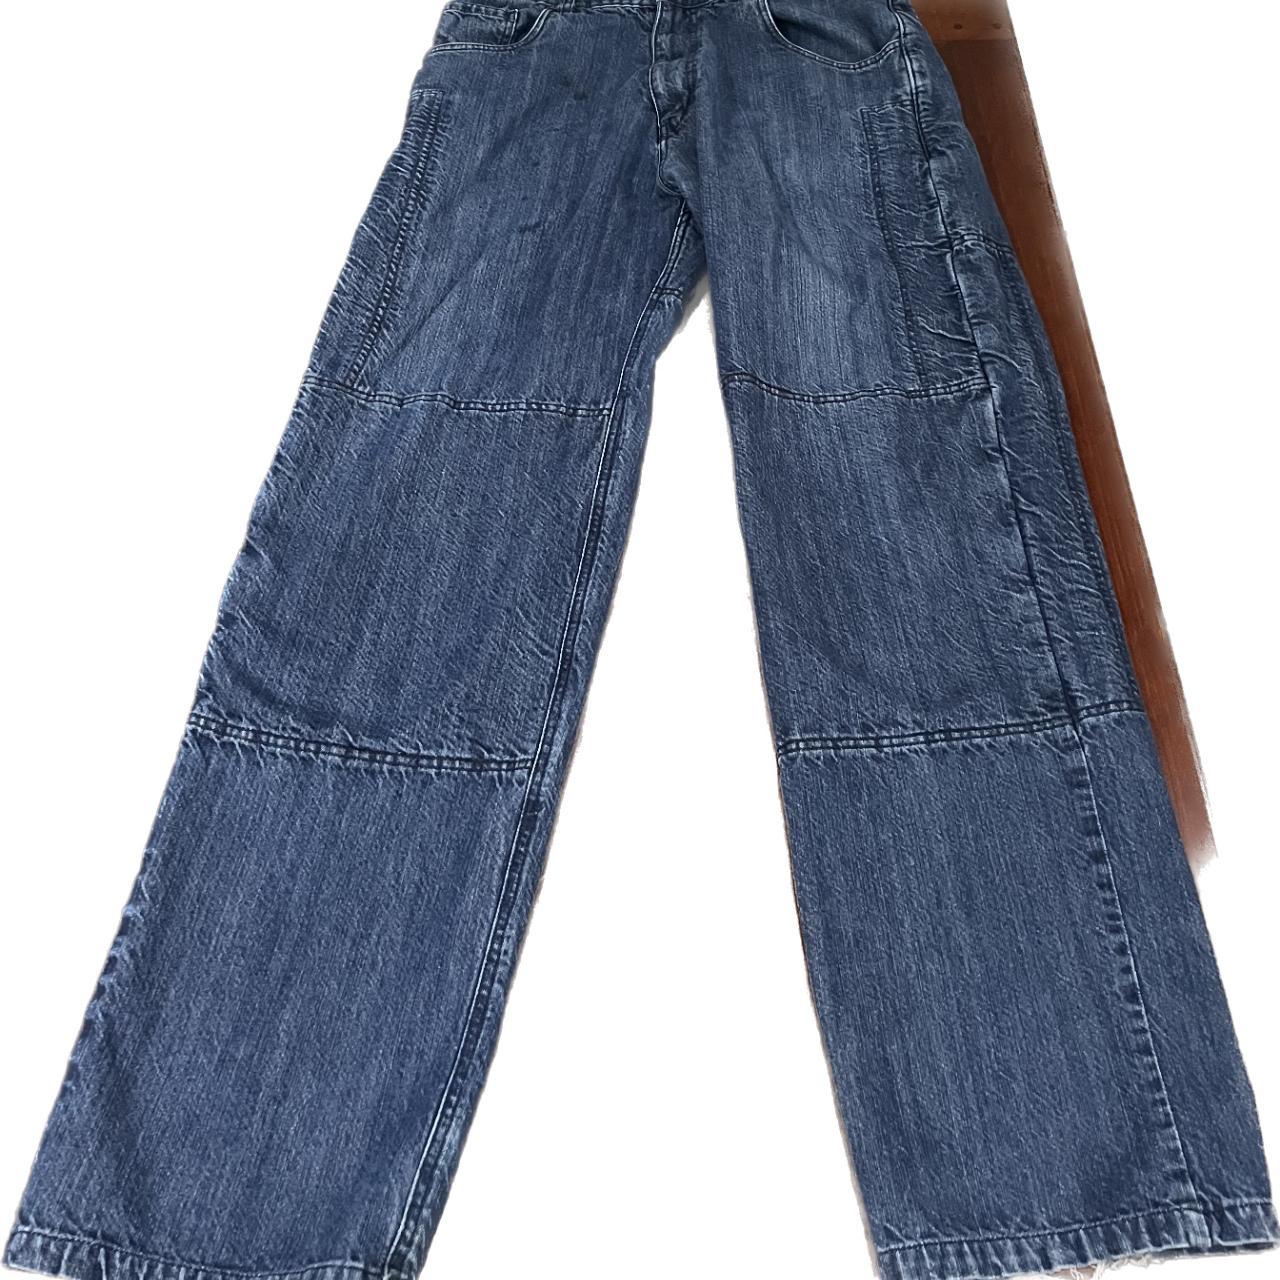 Vintage Baggy Mens Carpenter Jeans - Depop